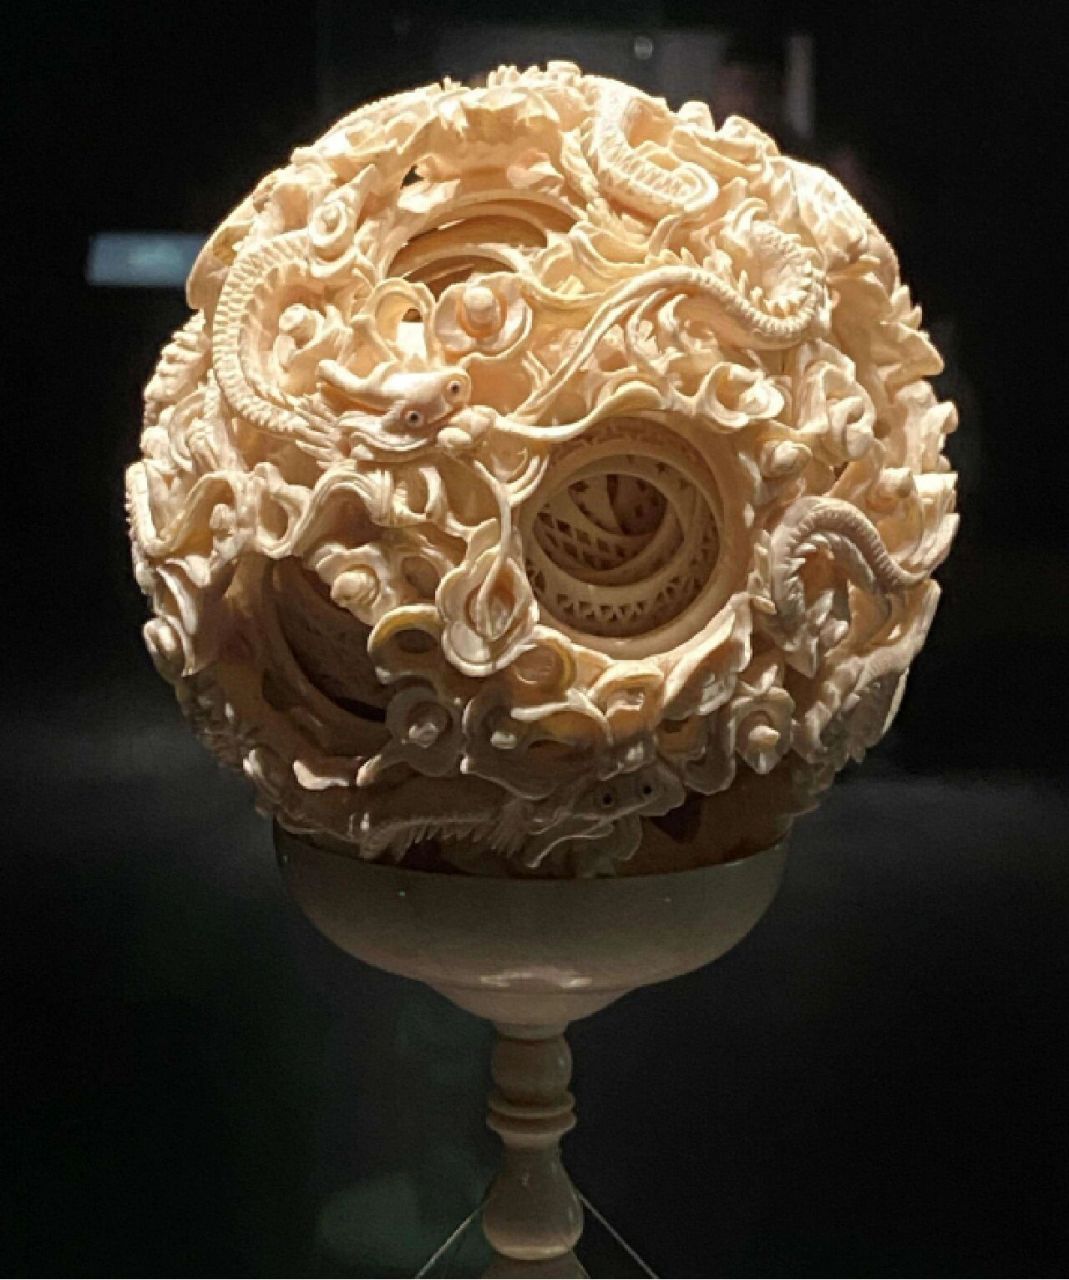 辽宁省博物馆 清代云龙人物纹转心象牙球,清代文物,又称为透雕象牙球